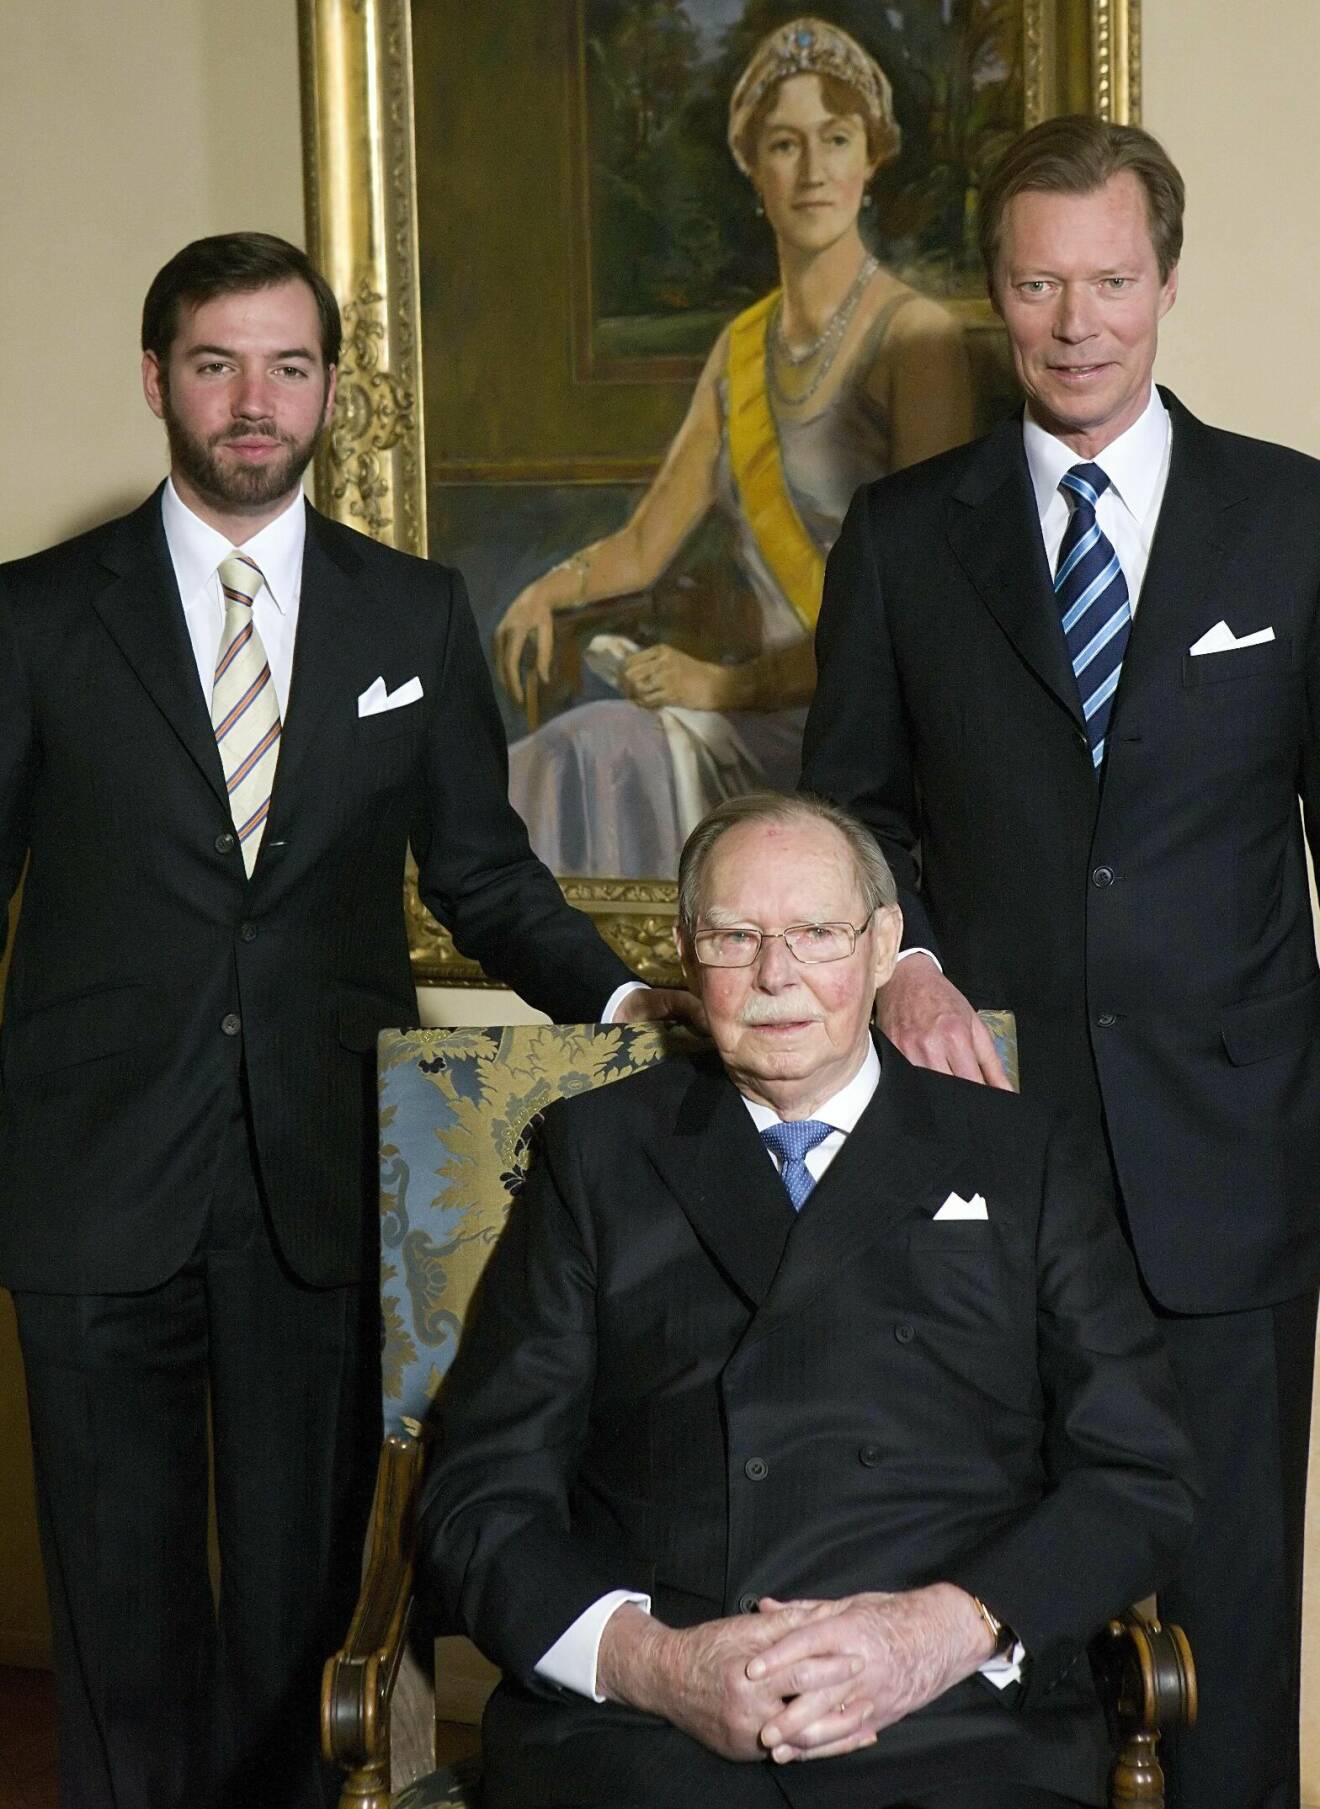 Luxemburgs storhertig Henri med sin pappa Jean och sin son prins Guillaume